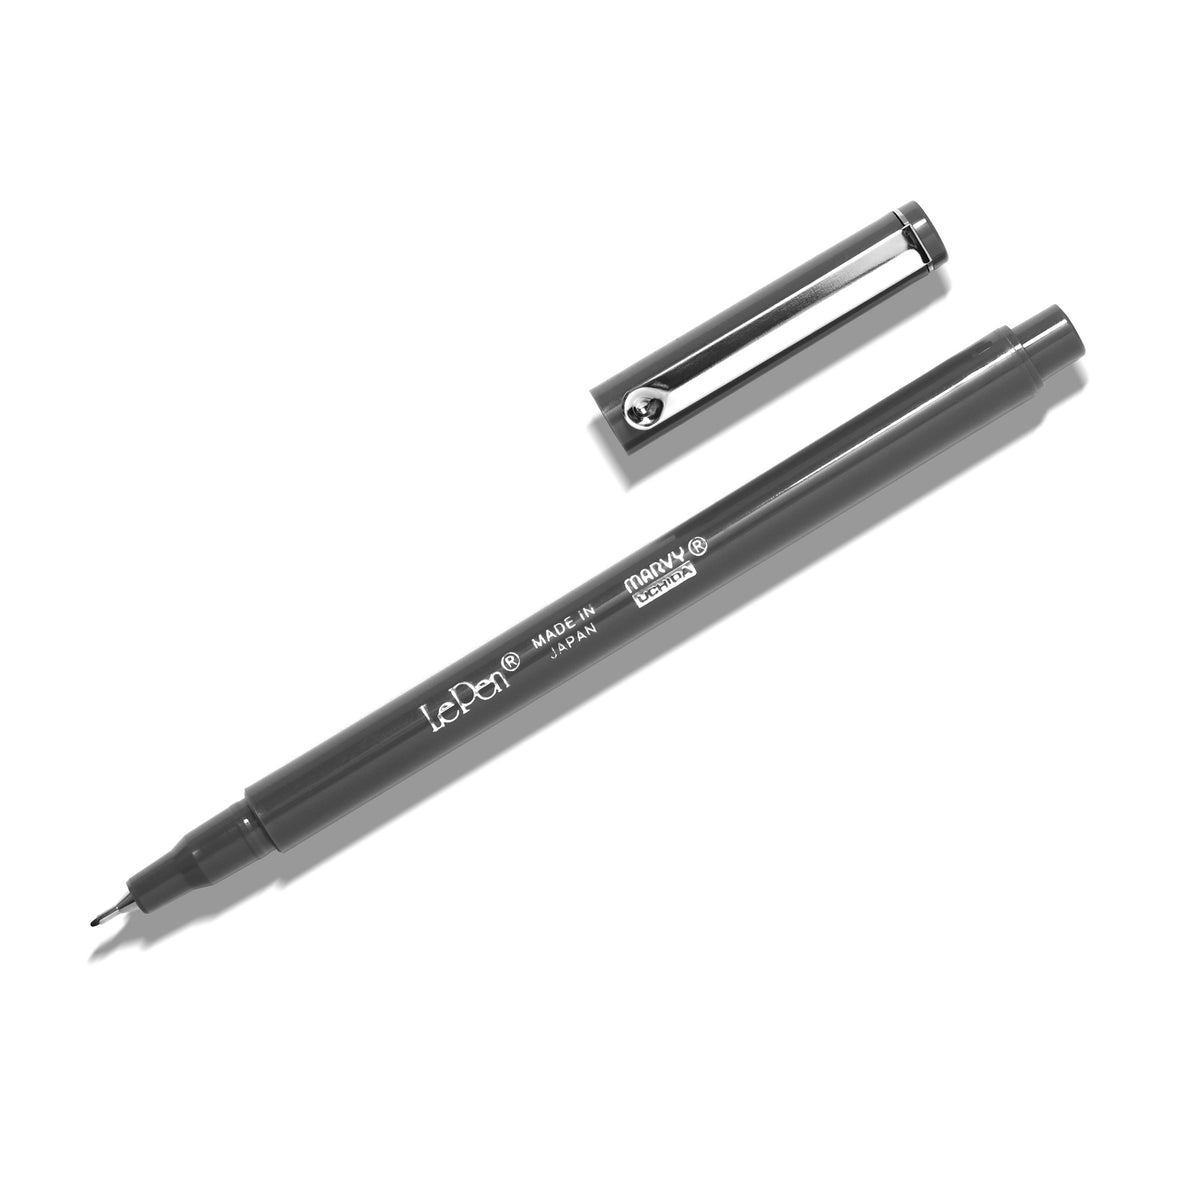 Le Pen 0.3mm Fine Tip Pen